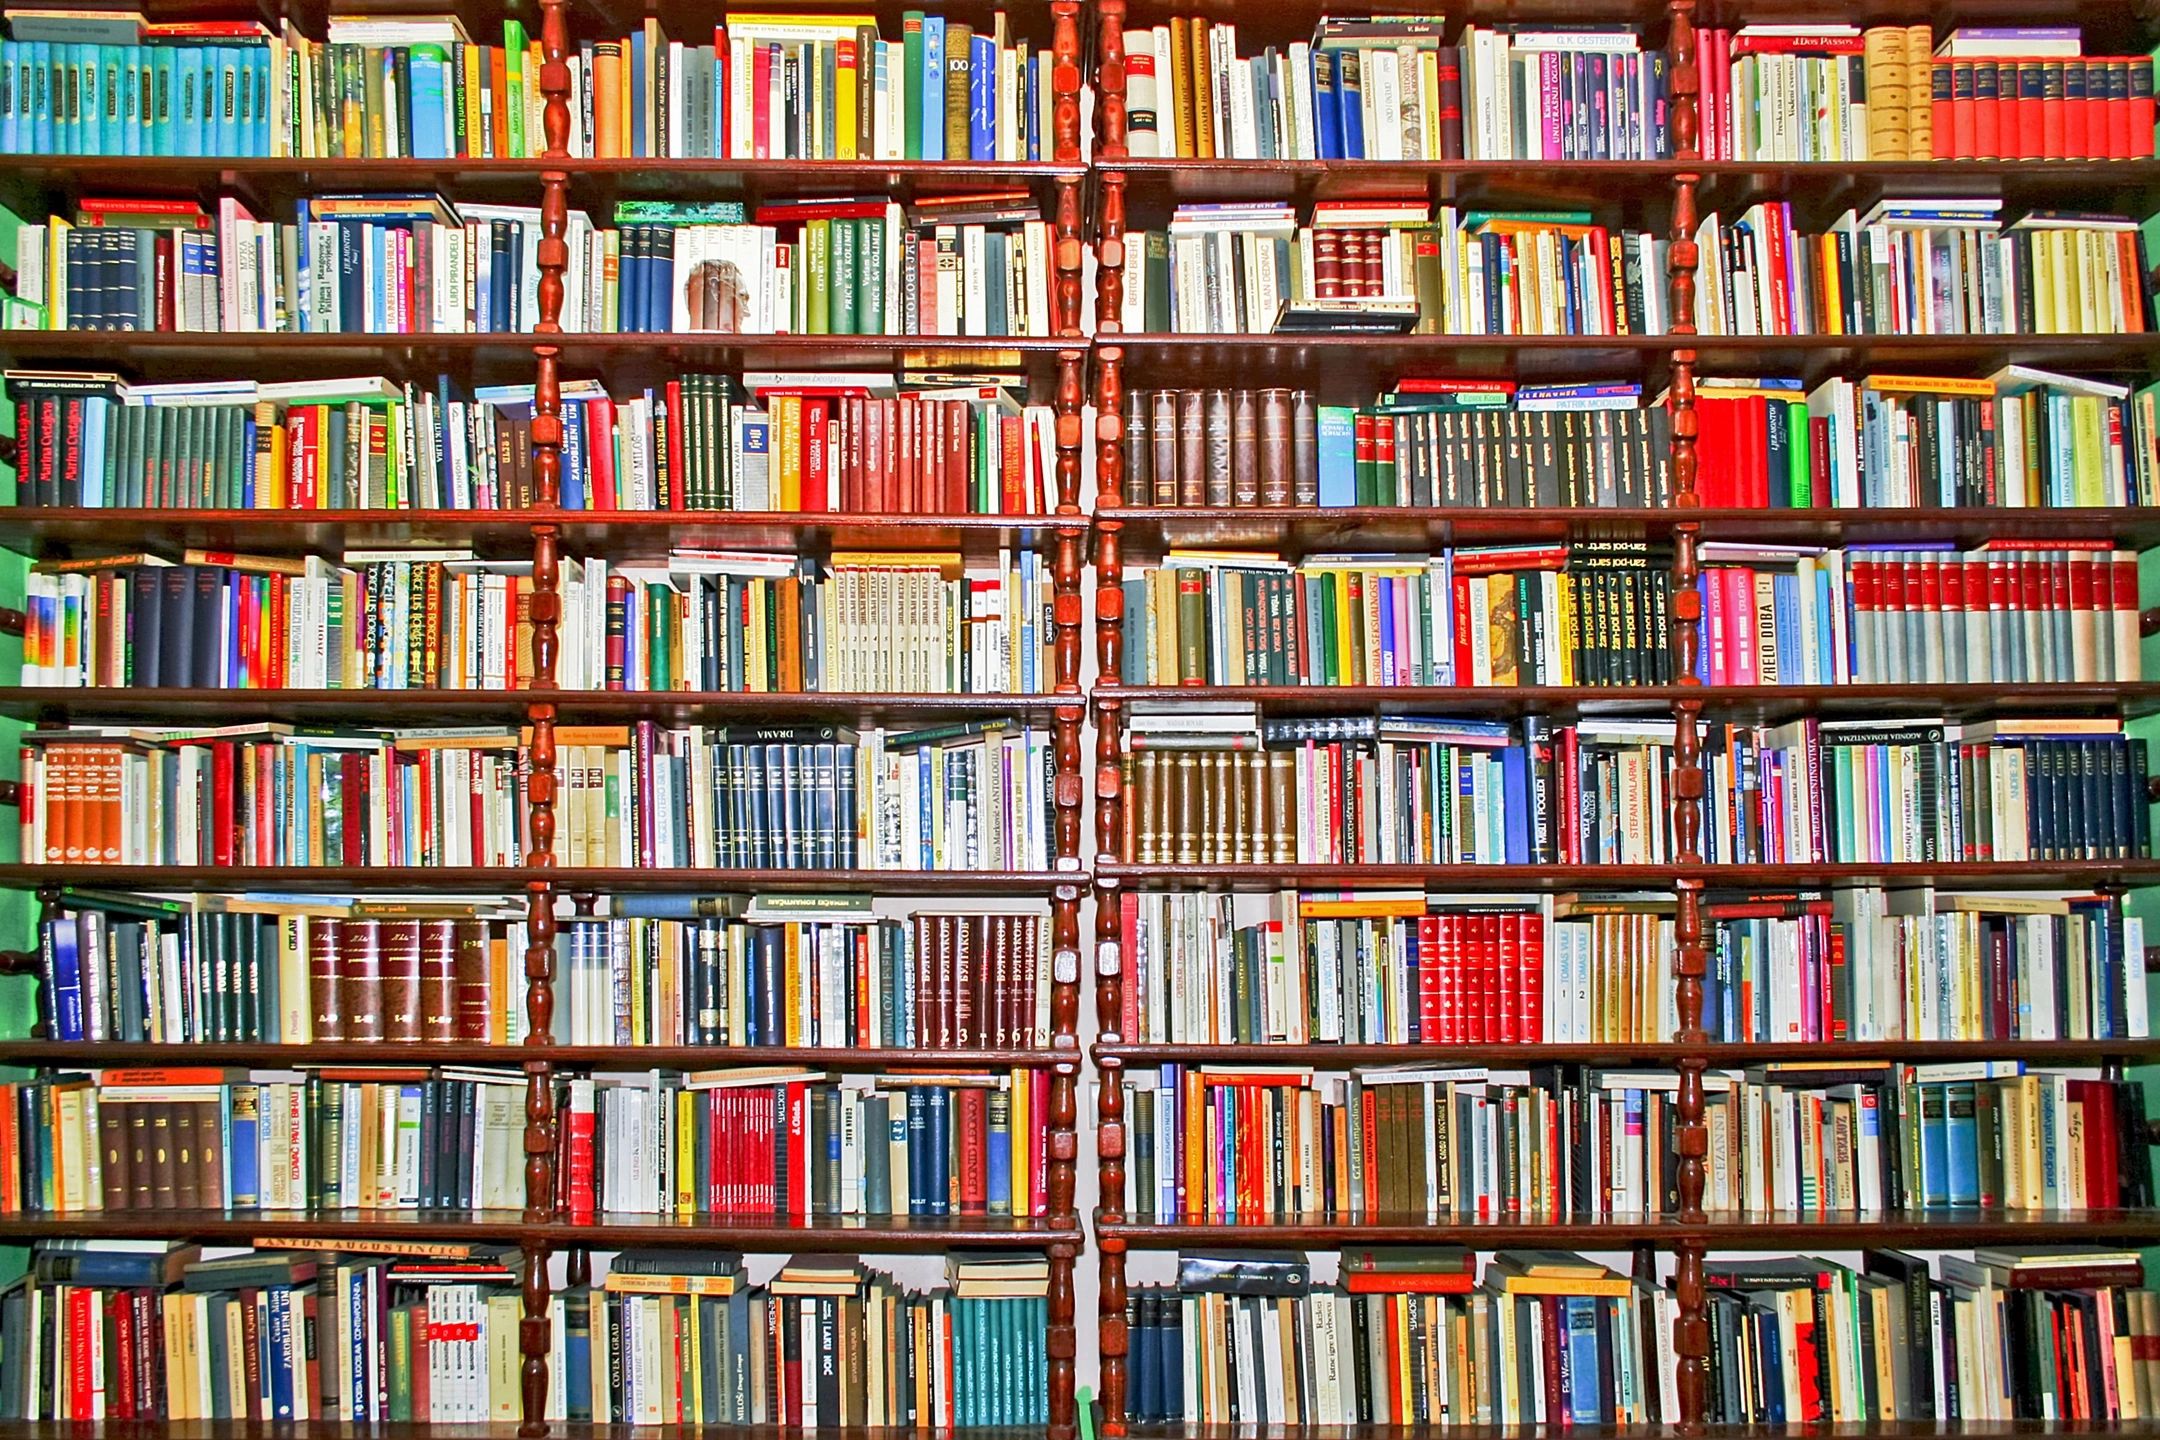 shelves and shelves of books